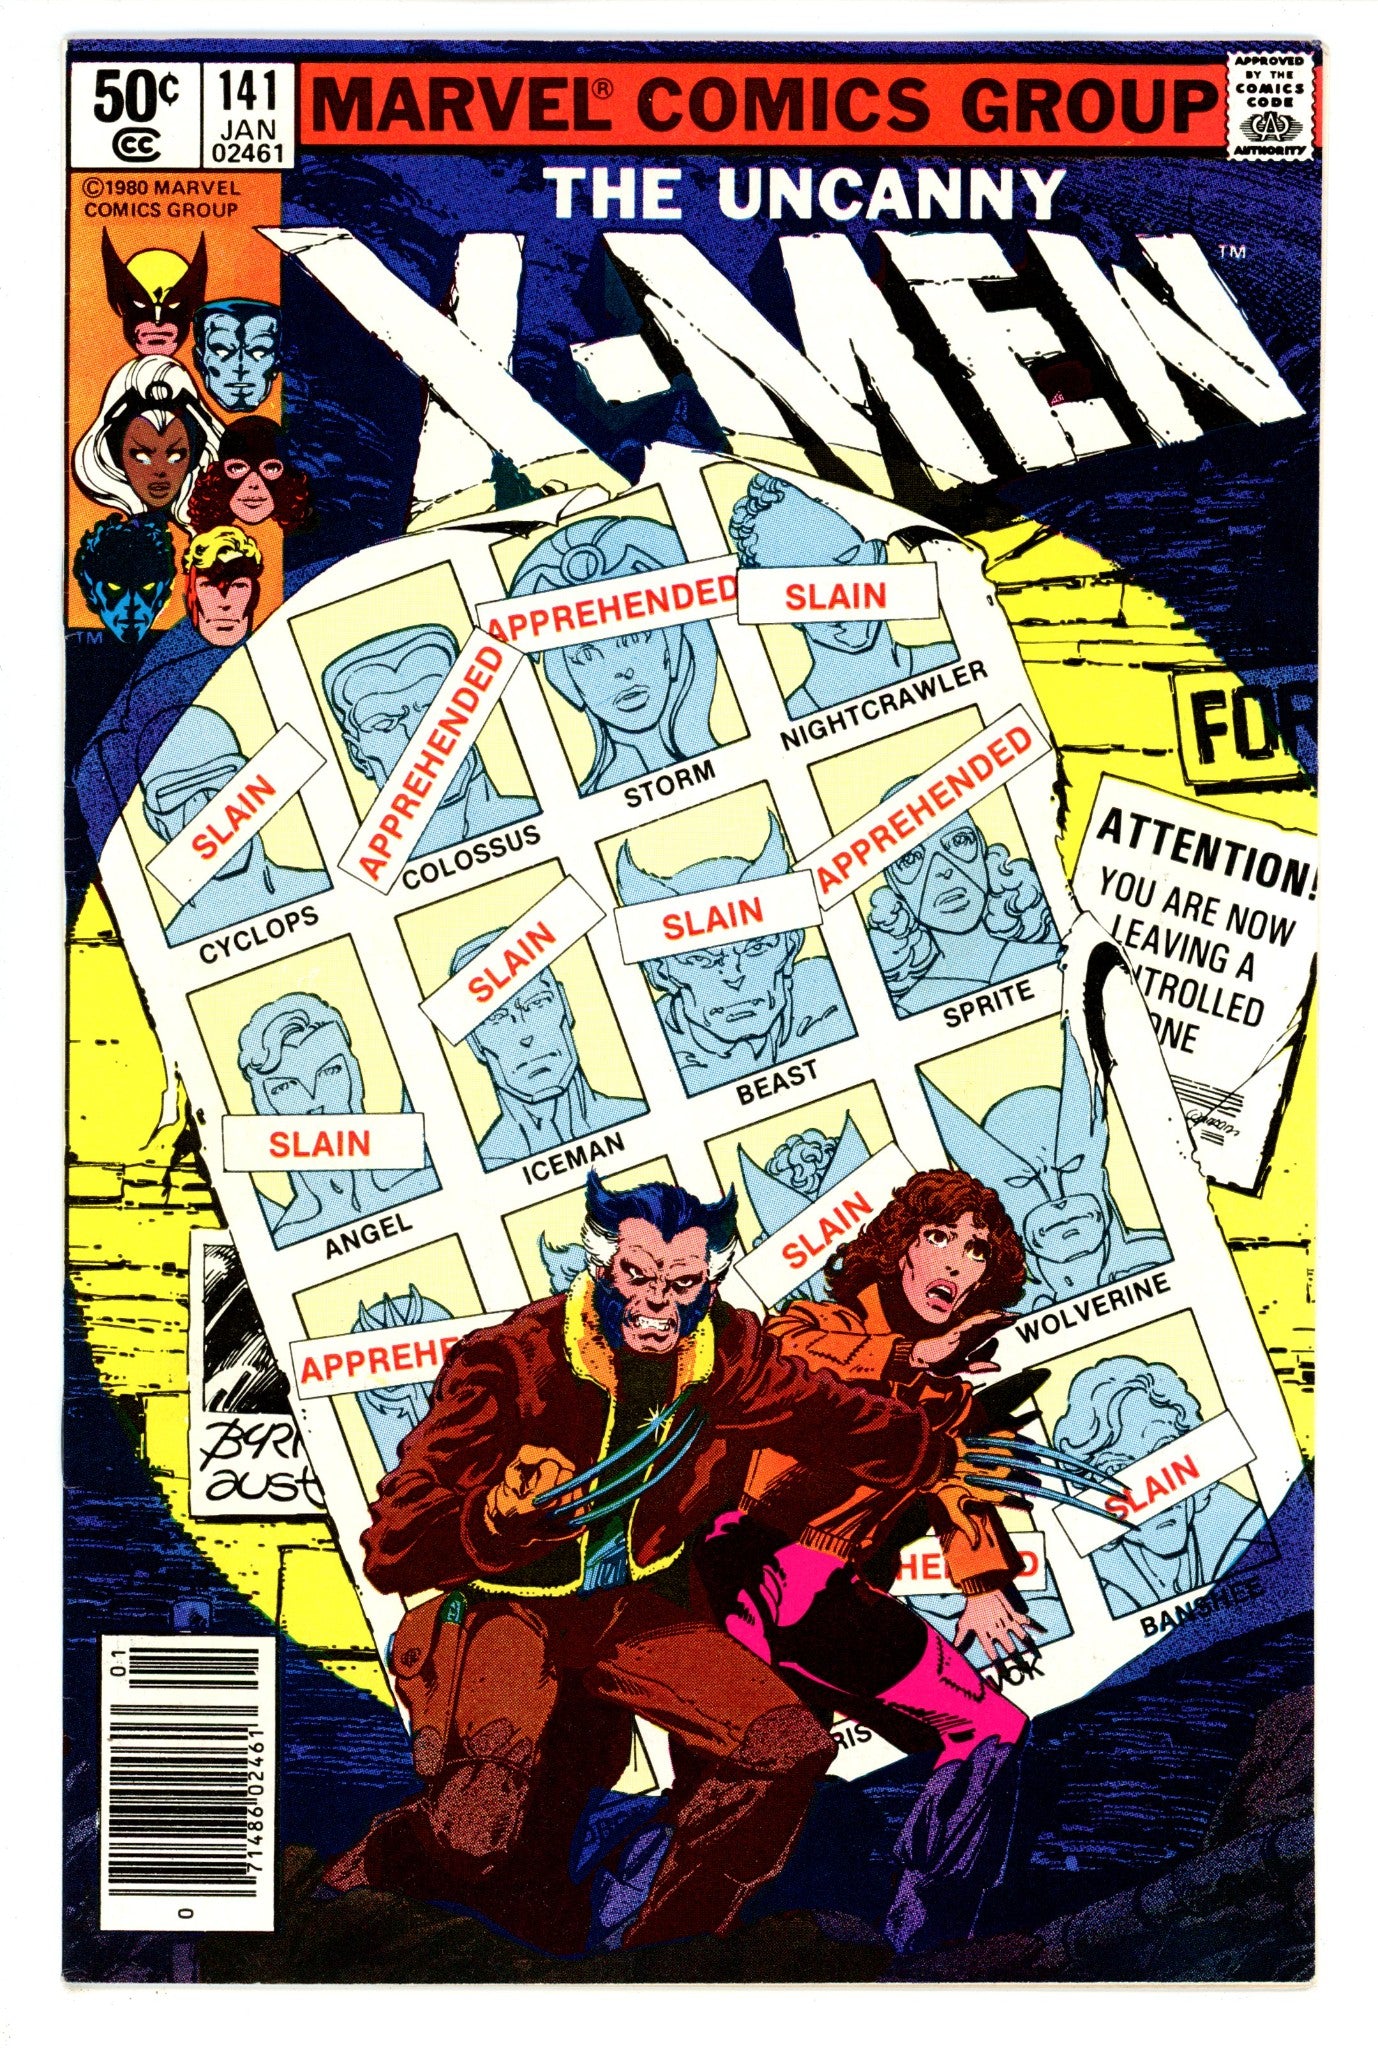 The X-Men Vol 1 141 VF (8.0) (1981) Newsstand 